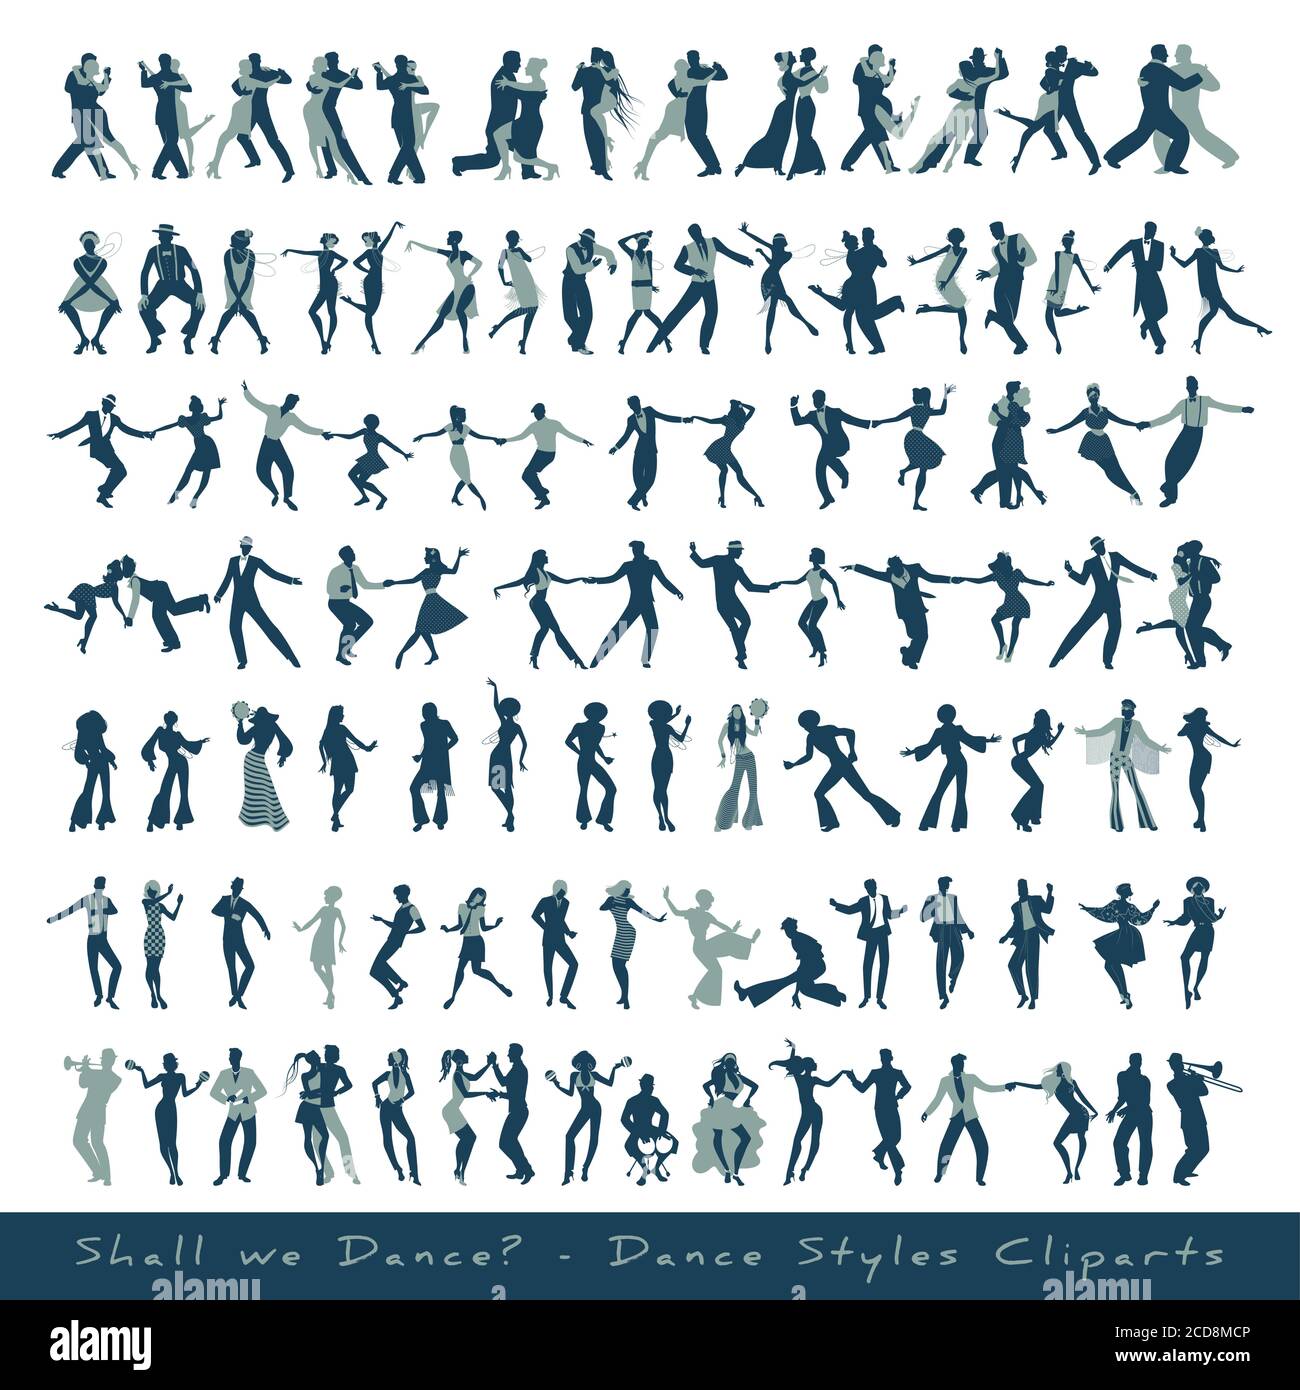 Collezione di clipart di stili di danza. Silhouette di ballerini di musica tango, jazz, swing, rock, pop, soul e latin, isolate su sfondo bianco Illustrazione Vettoriale